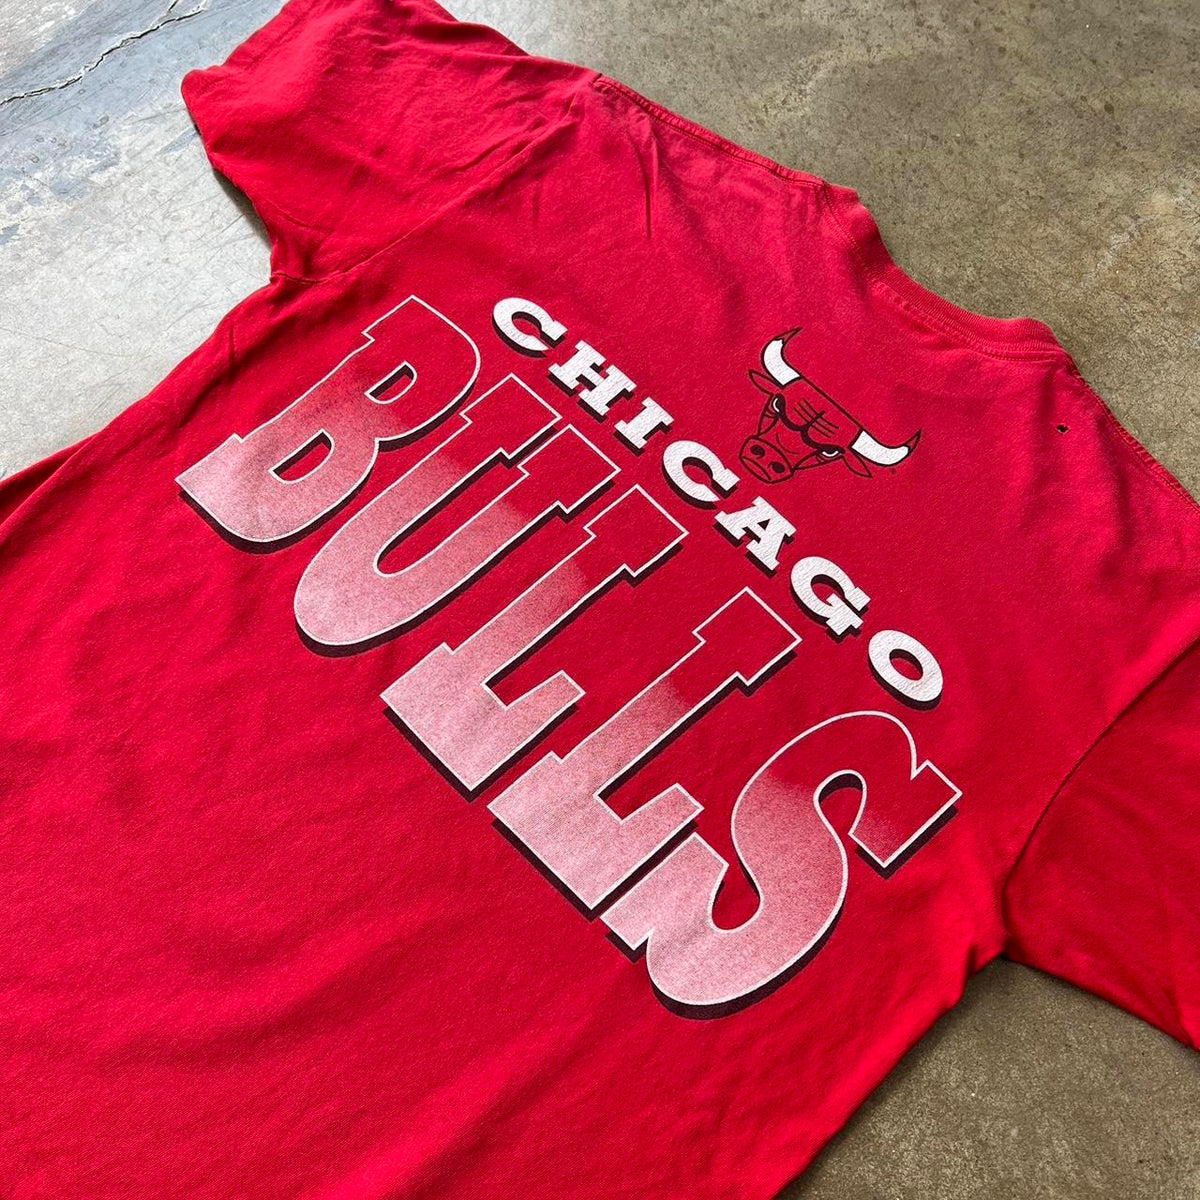 Chicago Bulls Mascot Tee